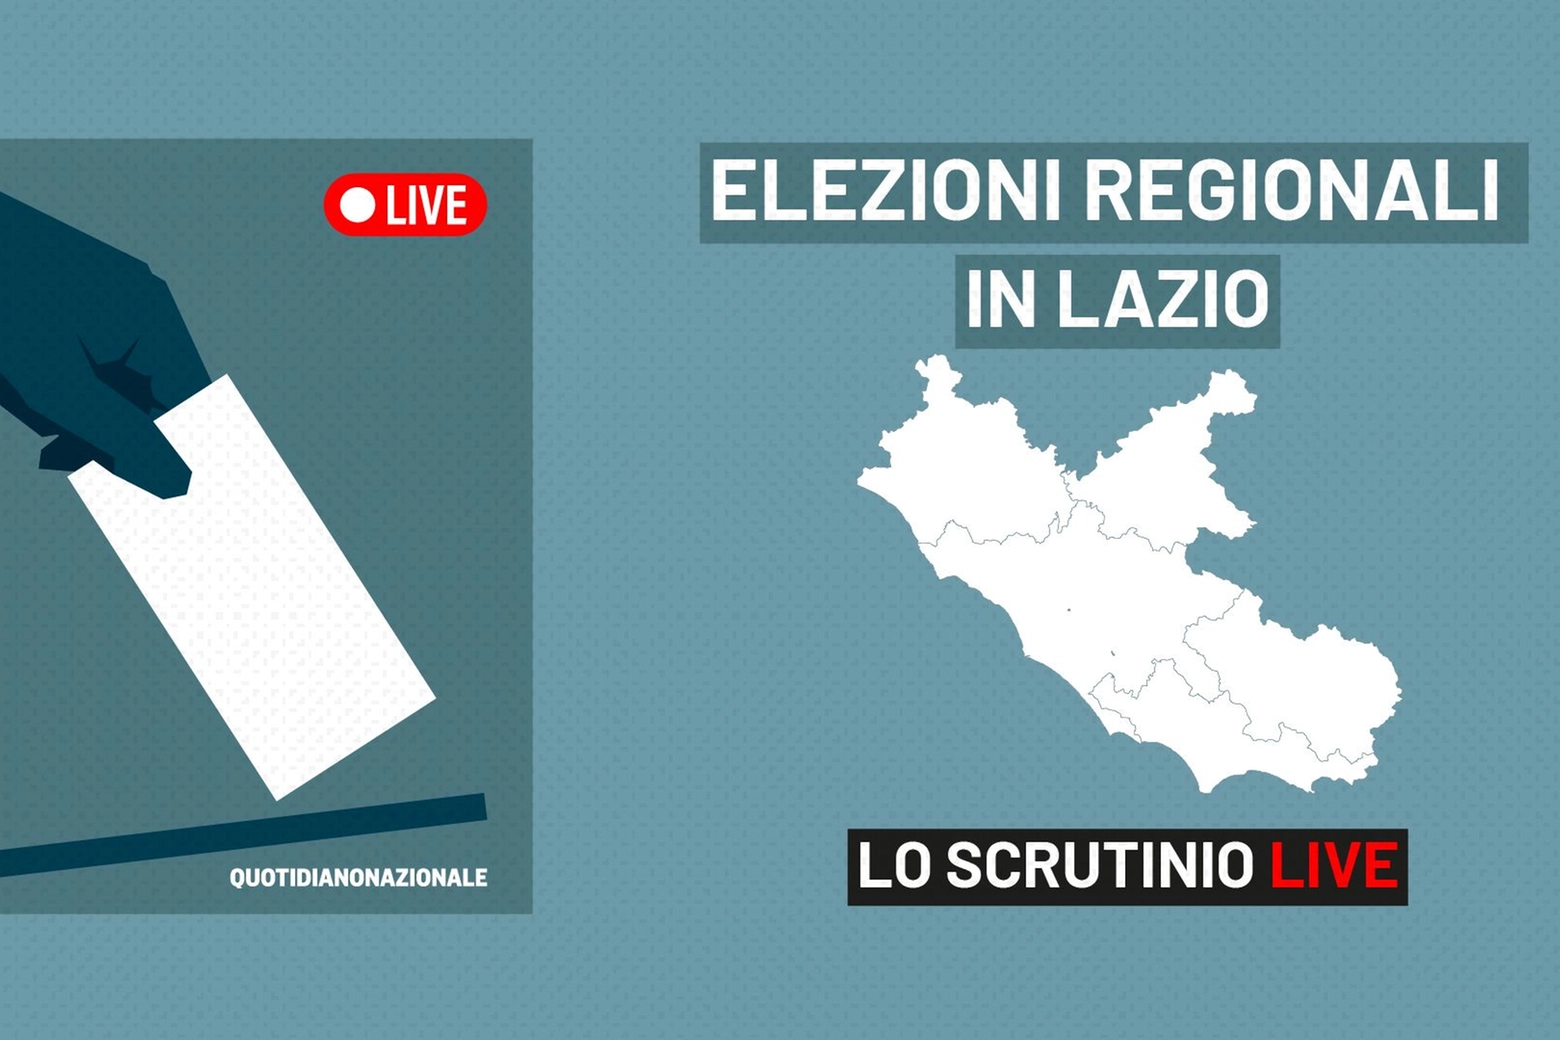 Elezioni Regionali Lazio 